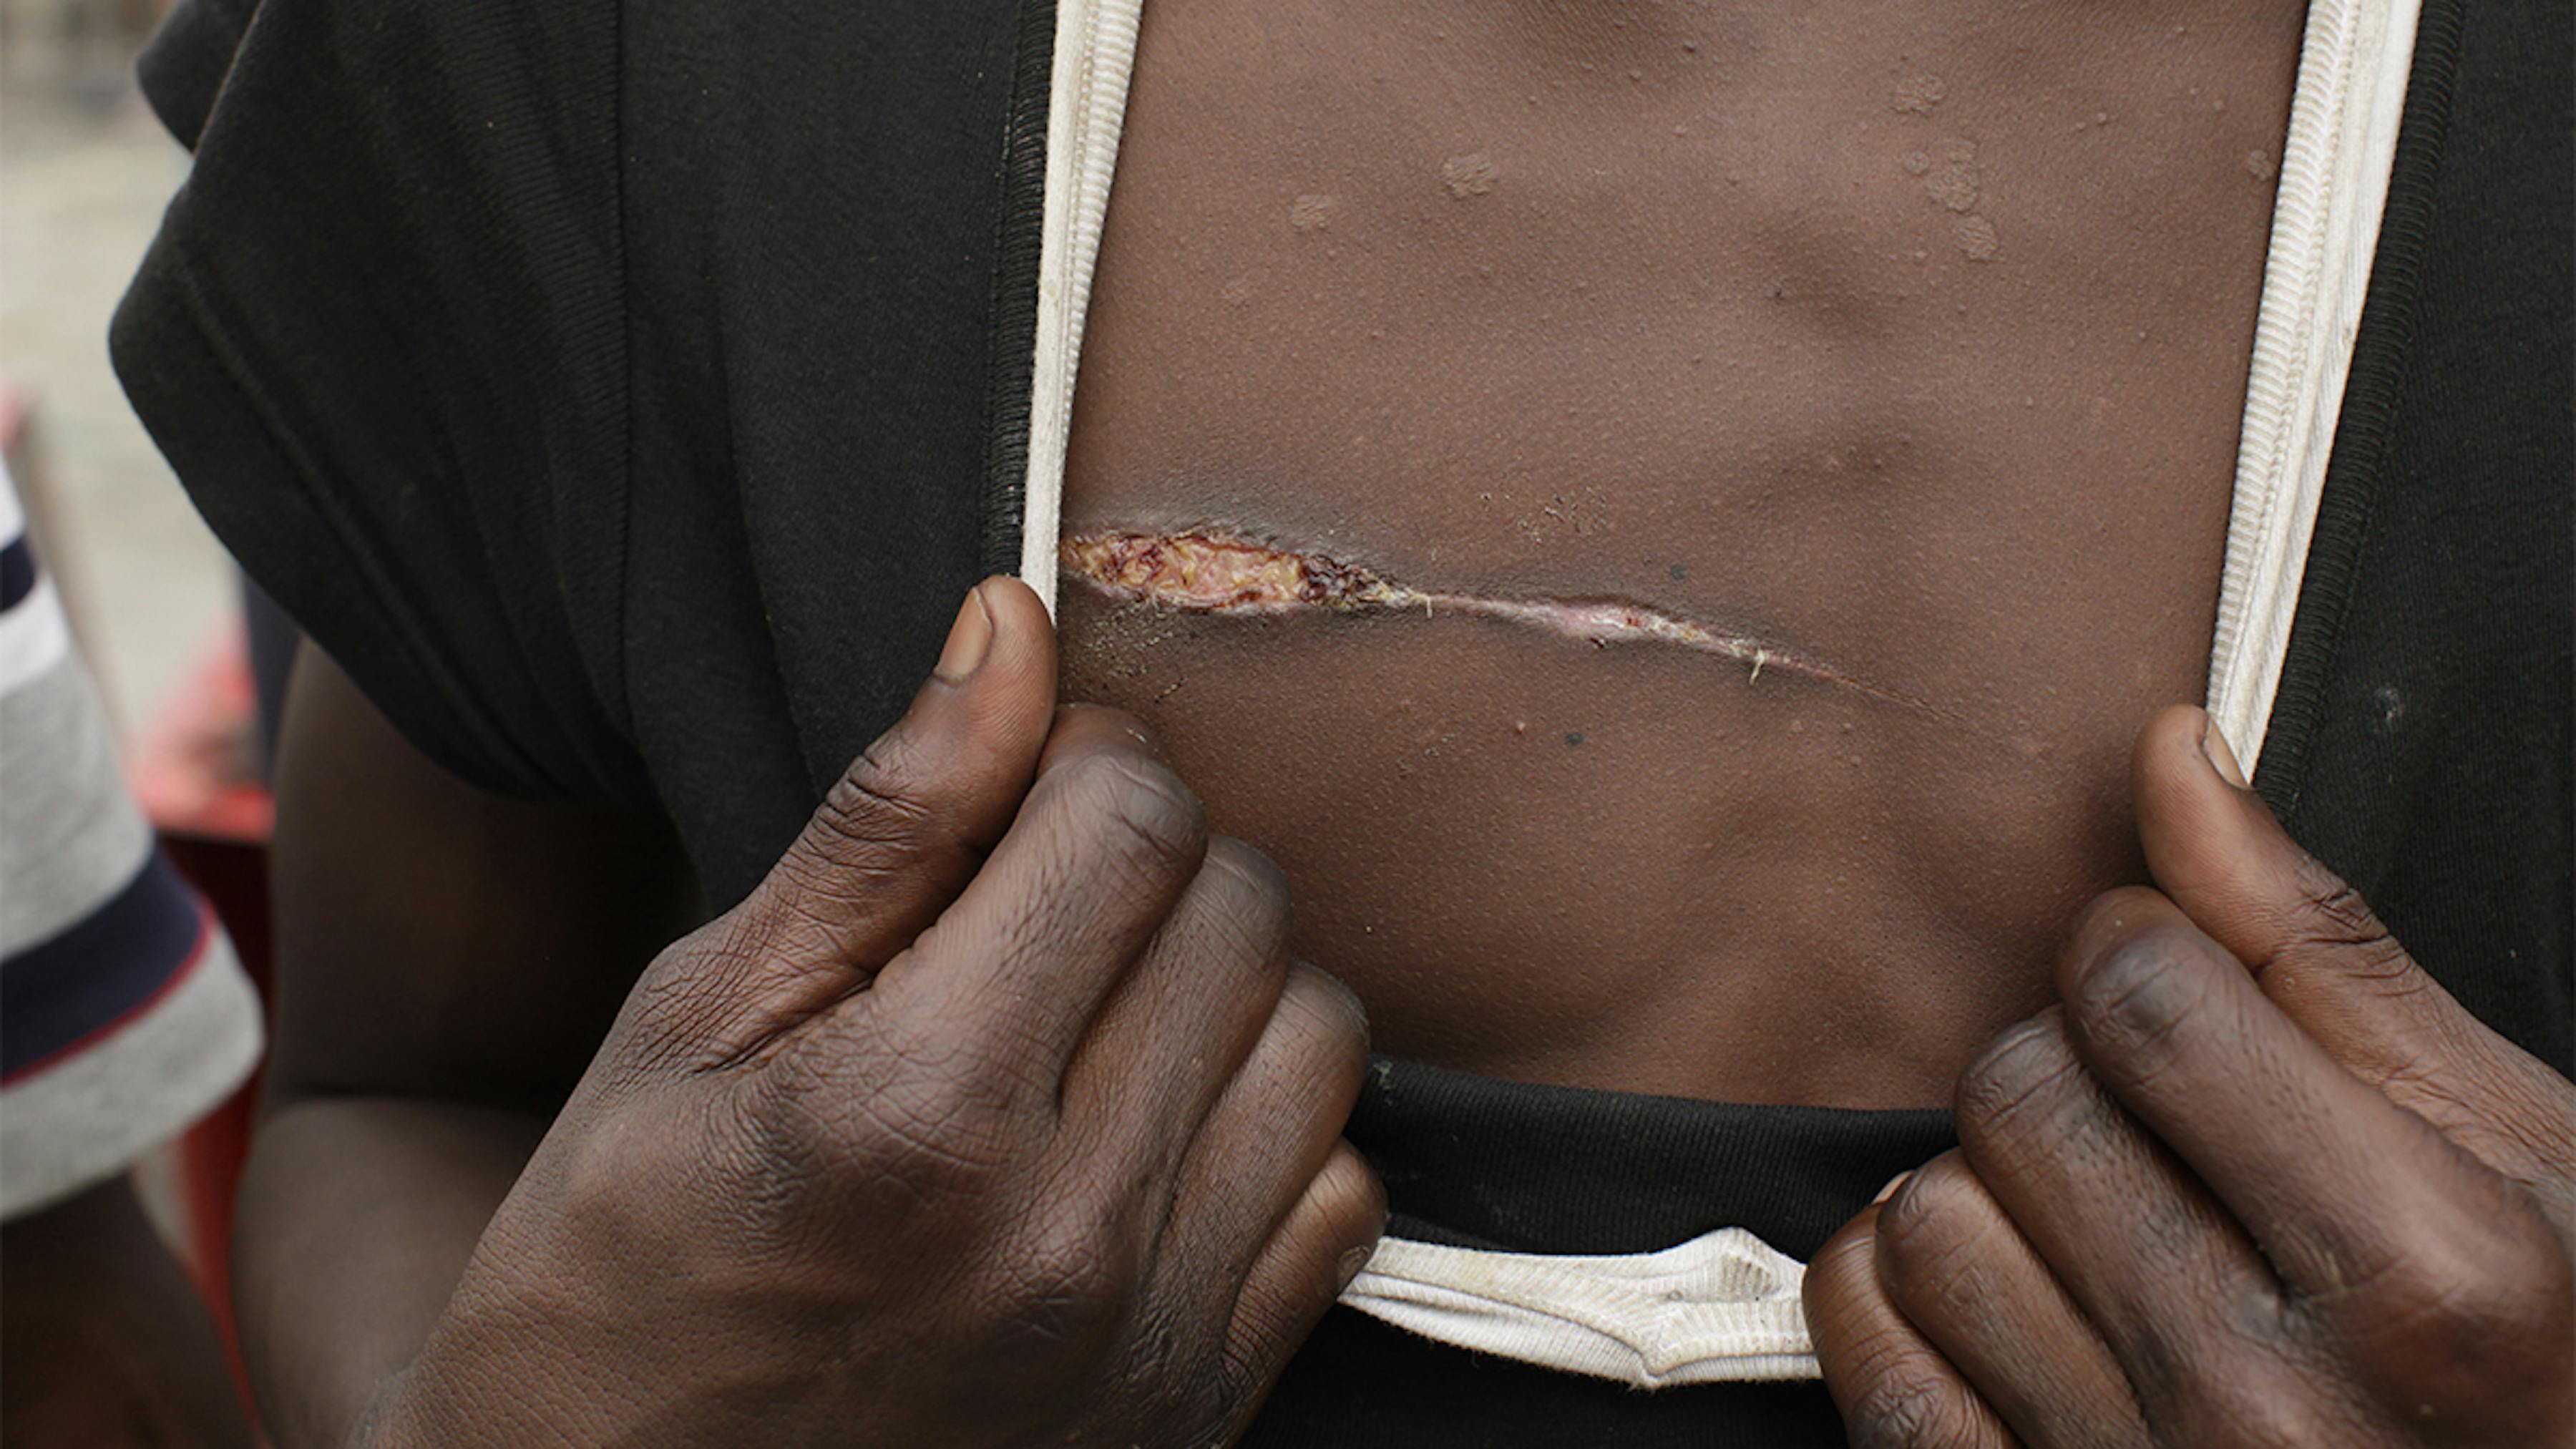 Costa d'Avorio, un ragazzo mostra la cicatrice sul petto causata da un'aggressione.